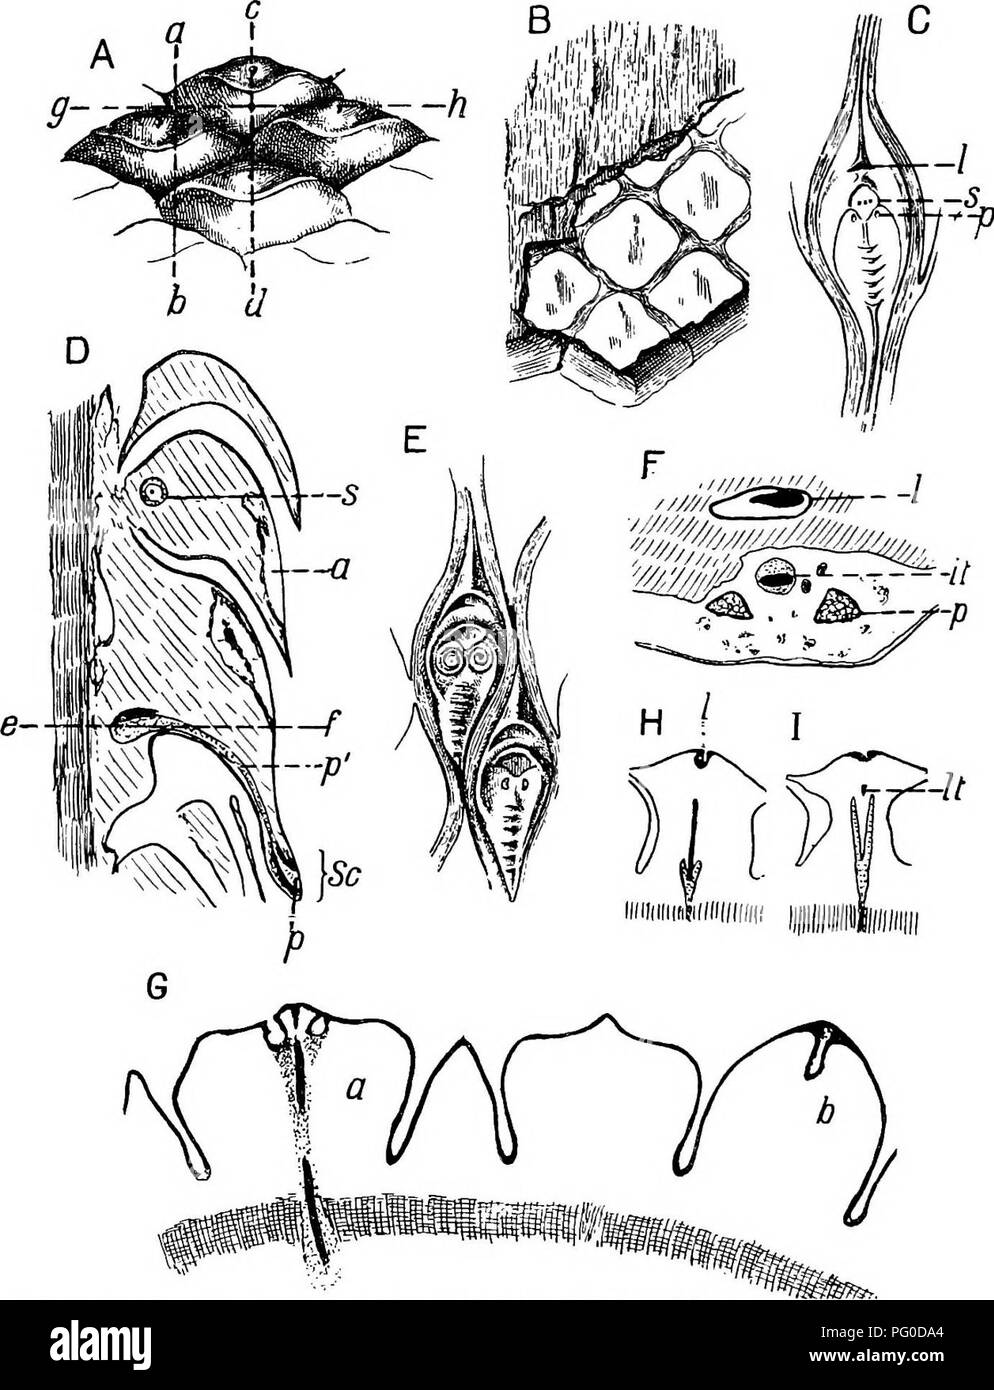 . Plantas fósiles : para los estudiantes de botánica y geología . Paleobotánica. 104 LYCOPODIALES malos ' [CH.. Fig. 146. Hoja Lepidodendron Lepidophloios y cojines. A, B, D, P, G, H, I Lepidophloios. (Fig. Un debería invertirse.) C, E. Lepidodendron aculeatum. A y B. A partir de un espécimen en el Sedgwick Museum, Cambridge (hoja- 3 cm Acolchado. amplio). C. De un ejemplar en la Sedgwick Museum, Cambridge (hoja- cojín de 4 cm. de largo. D. desde una sección de la colección Cambridge Escuela de Botánica. E. De un ejemplar en la colección de Bunbury, Cambridge Escuela Botánica, mostrando Spirorbis shells (leaf-Cojín de 2 cm. de largo). F Foto de stock